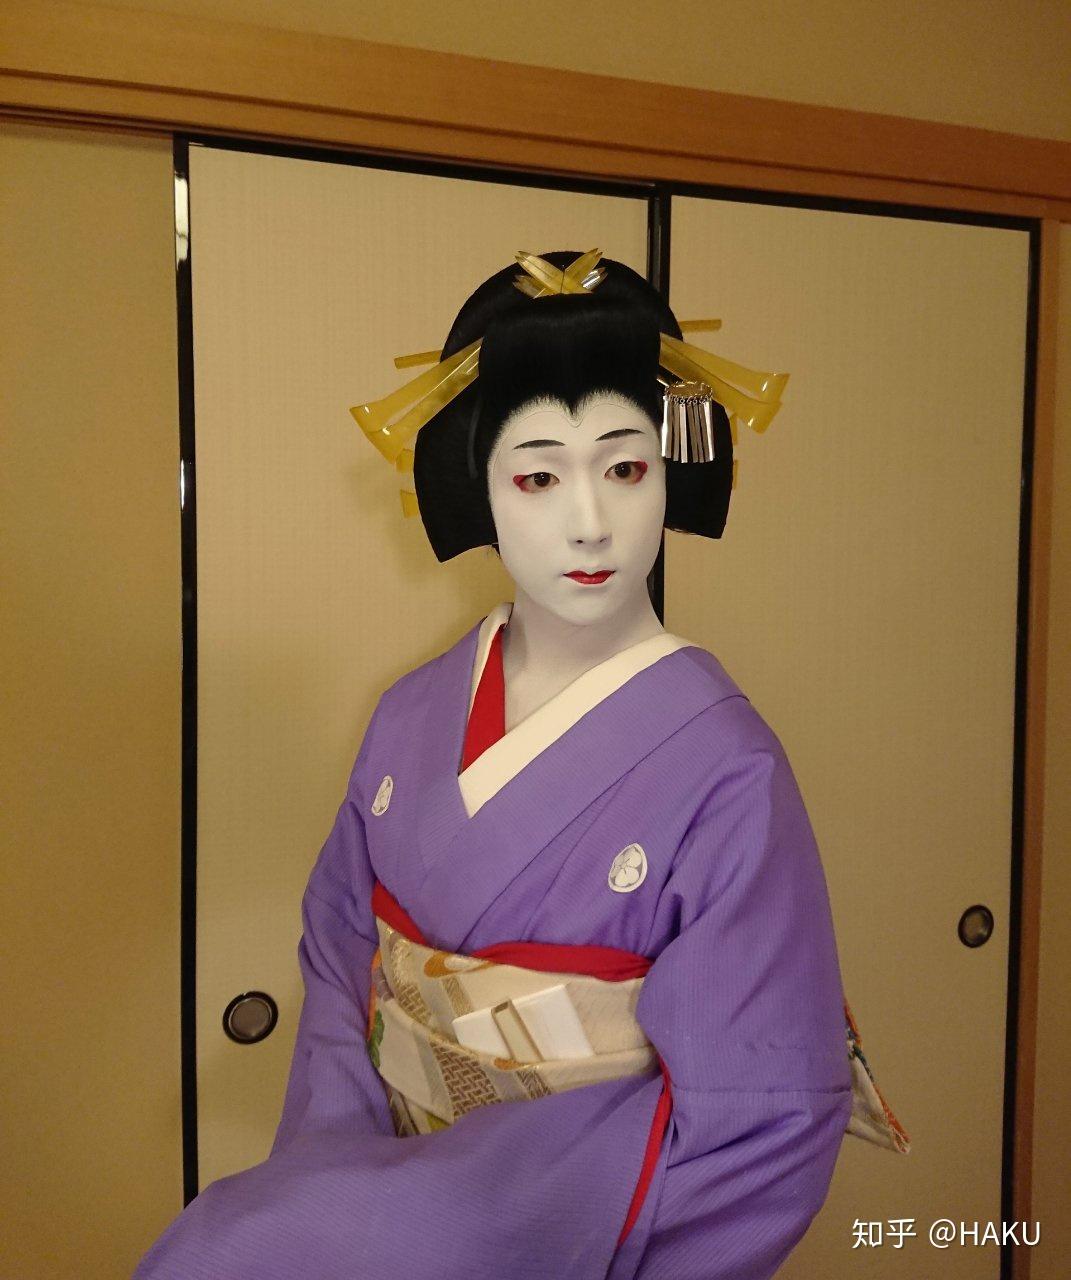 日本文化 带你走进歌舞伎的世界 ②歌舞伎看点及观赏攻略篇 - 知乎